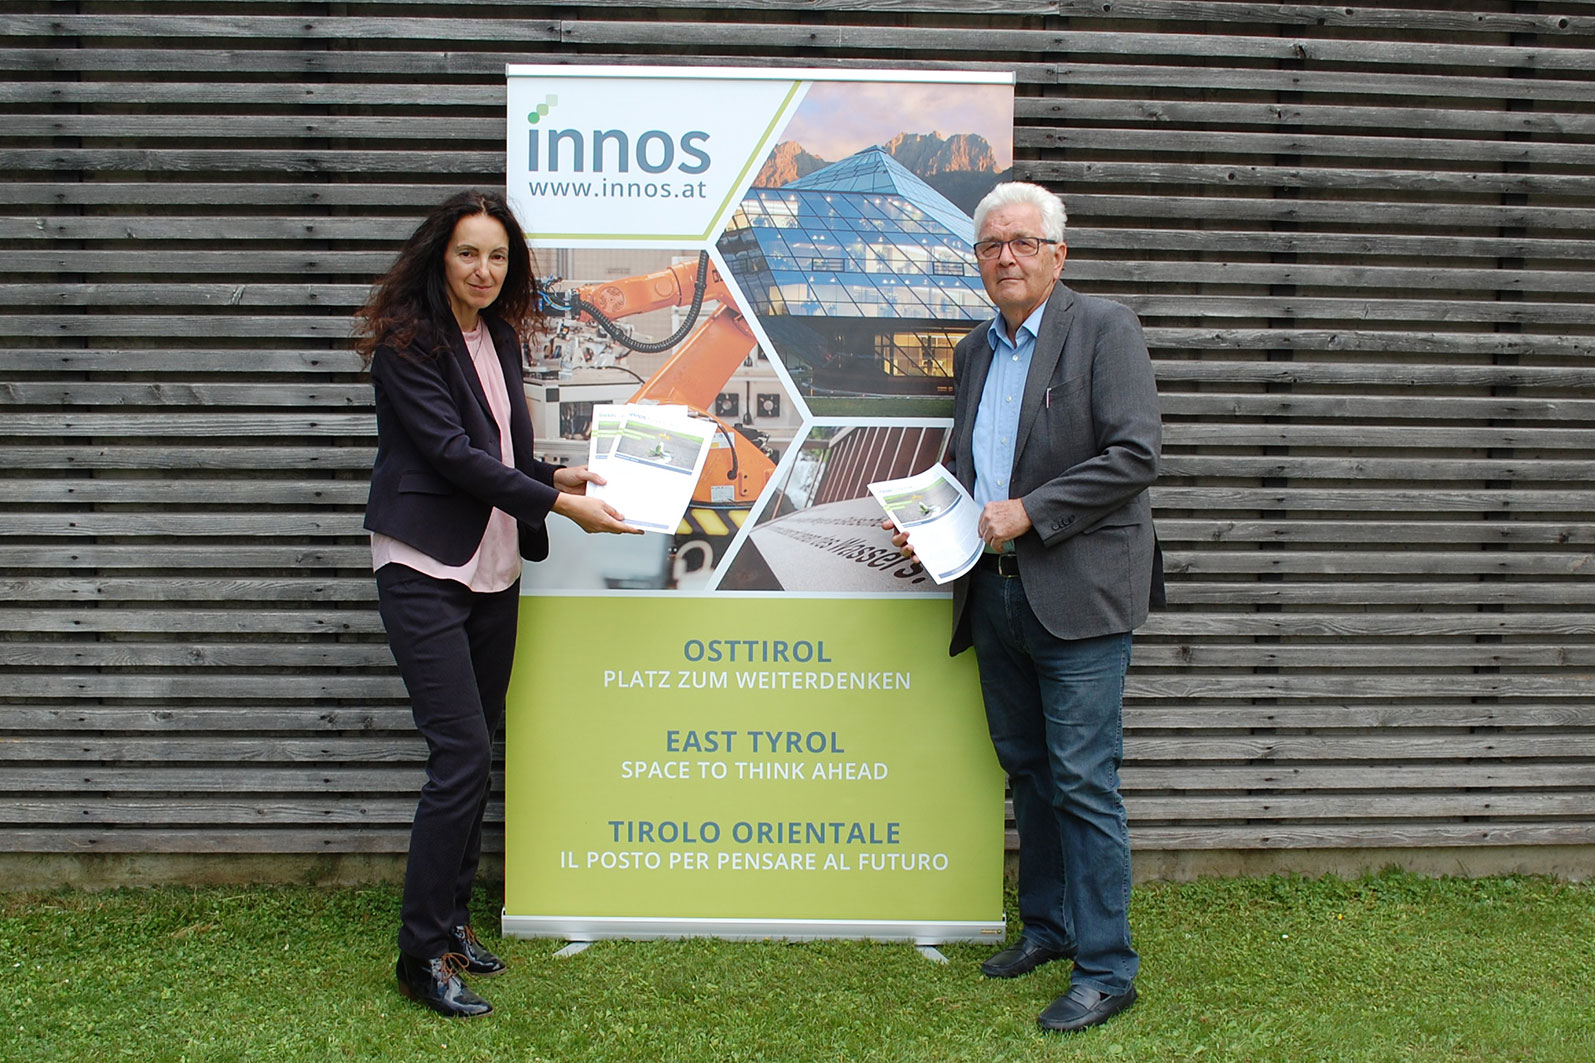 Karin Ibovnik ist neue Geschäftsführerin der INNOS GmbH